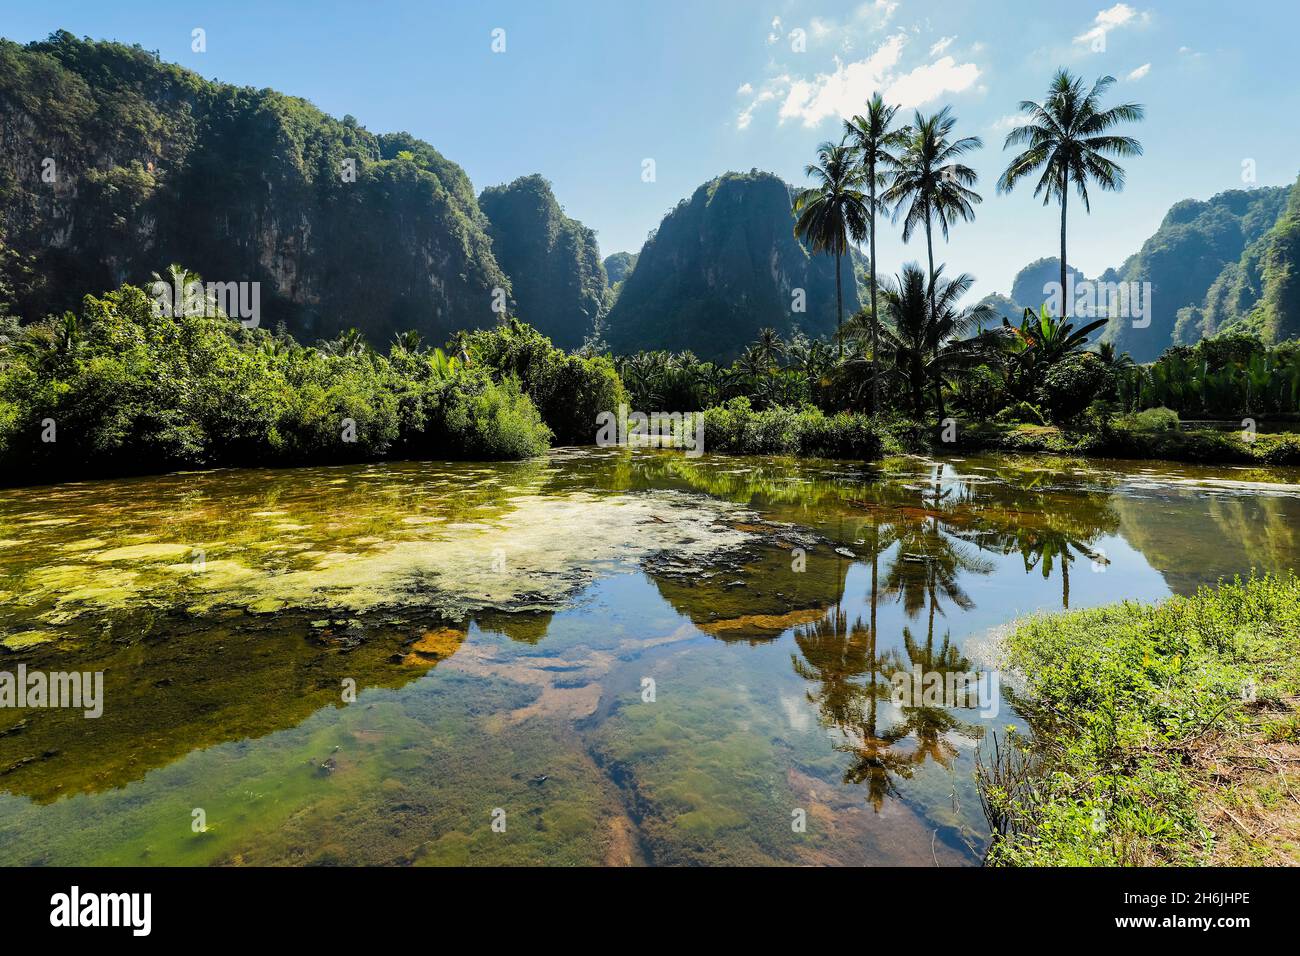 Des pics calcaires et des palmiers se reflètent sur l'étang à poissons dans la région karstique, Rammang-Rammang, Maros, Sulawesi du Sud, Indonésie,Asie du Sud-est, Asie Banque D'Images